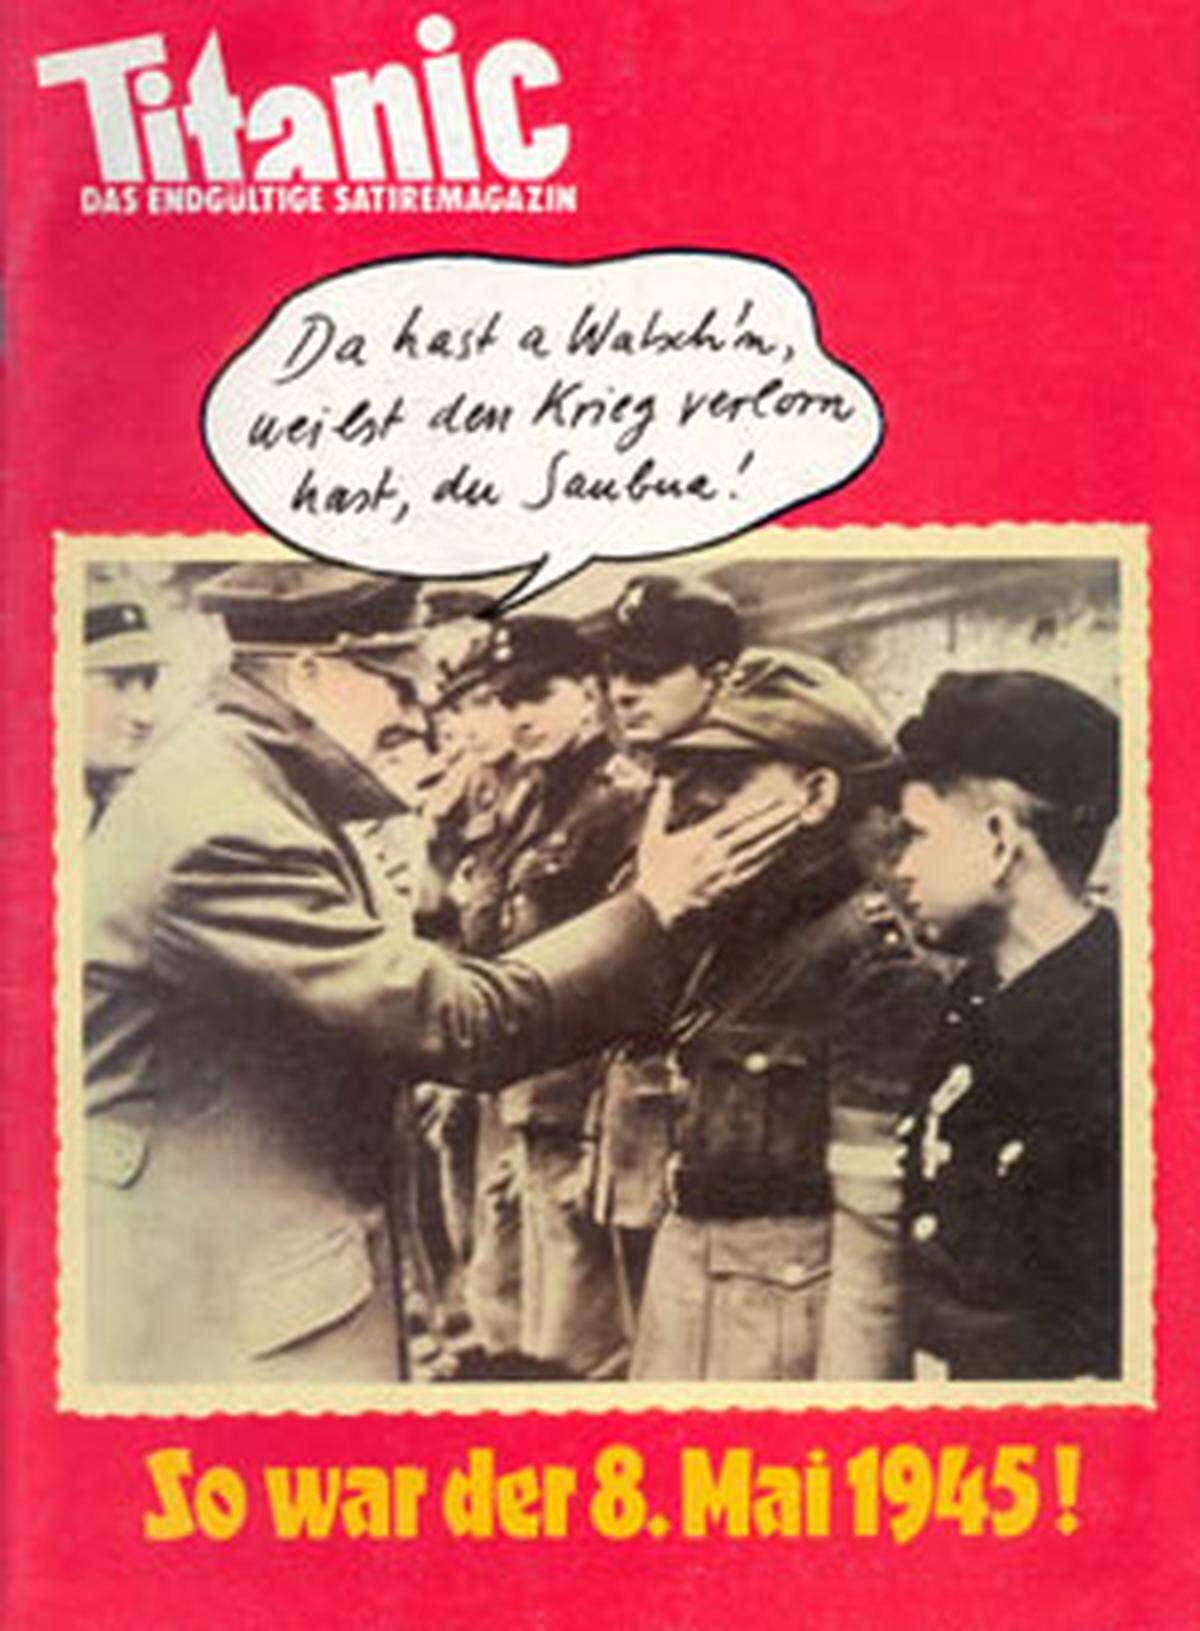 Der Massenmörder mit den häufigsten Cover-Auftritten: Adolf Hitler. 40 Jahre nach dem Ende des Zweiten Weltkriegs deckt die Zeitschrift 1985 auf: "So war der 8. Mai 1945" und lässt den Dikator (österreichisch) sprechen: "Da hast a Watsch'n, weilst den Krieg verloren hast, du Saubua!"